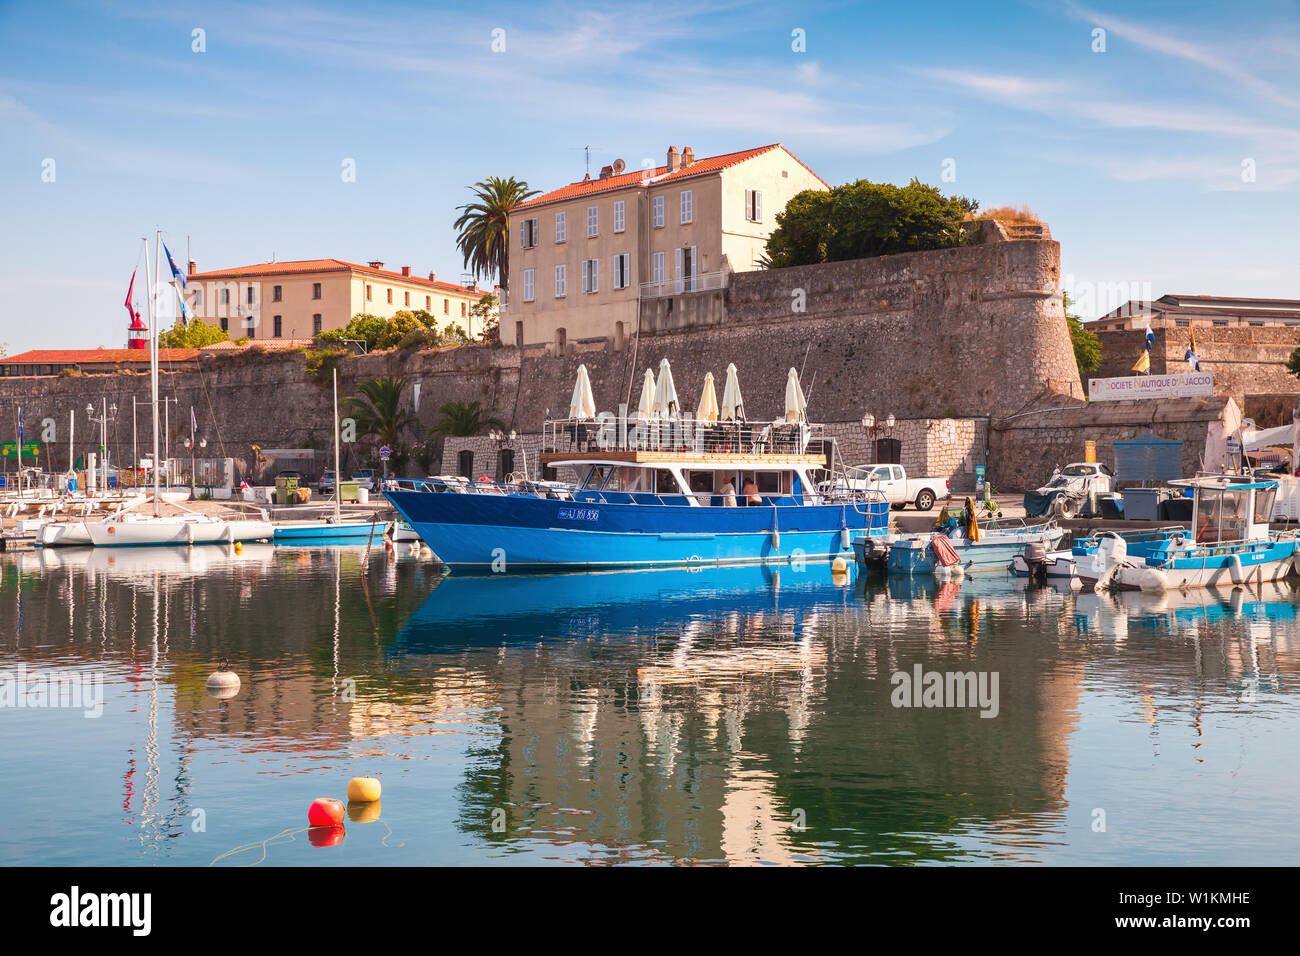 Ajaccio, Frankreich - 29. Juni 2015: Motorboote sind im alten Hafen von Ajaccio City, die Hauptstadt von Korsika, einer französischen Insel im Mittelmeer Stockfoto